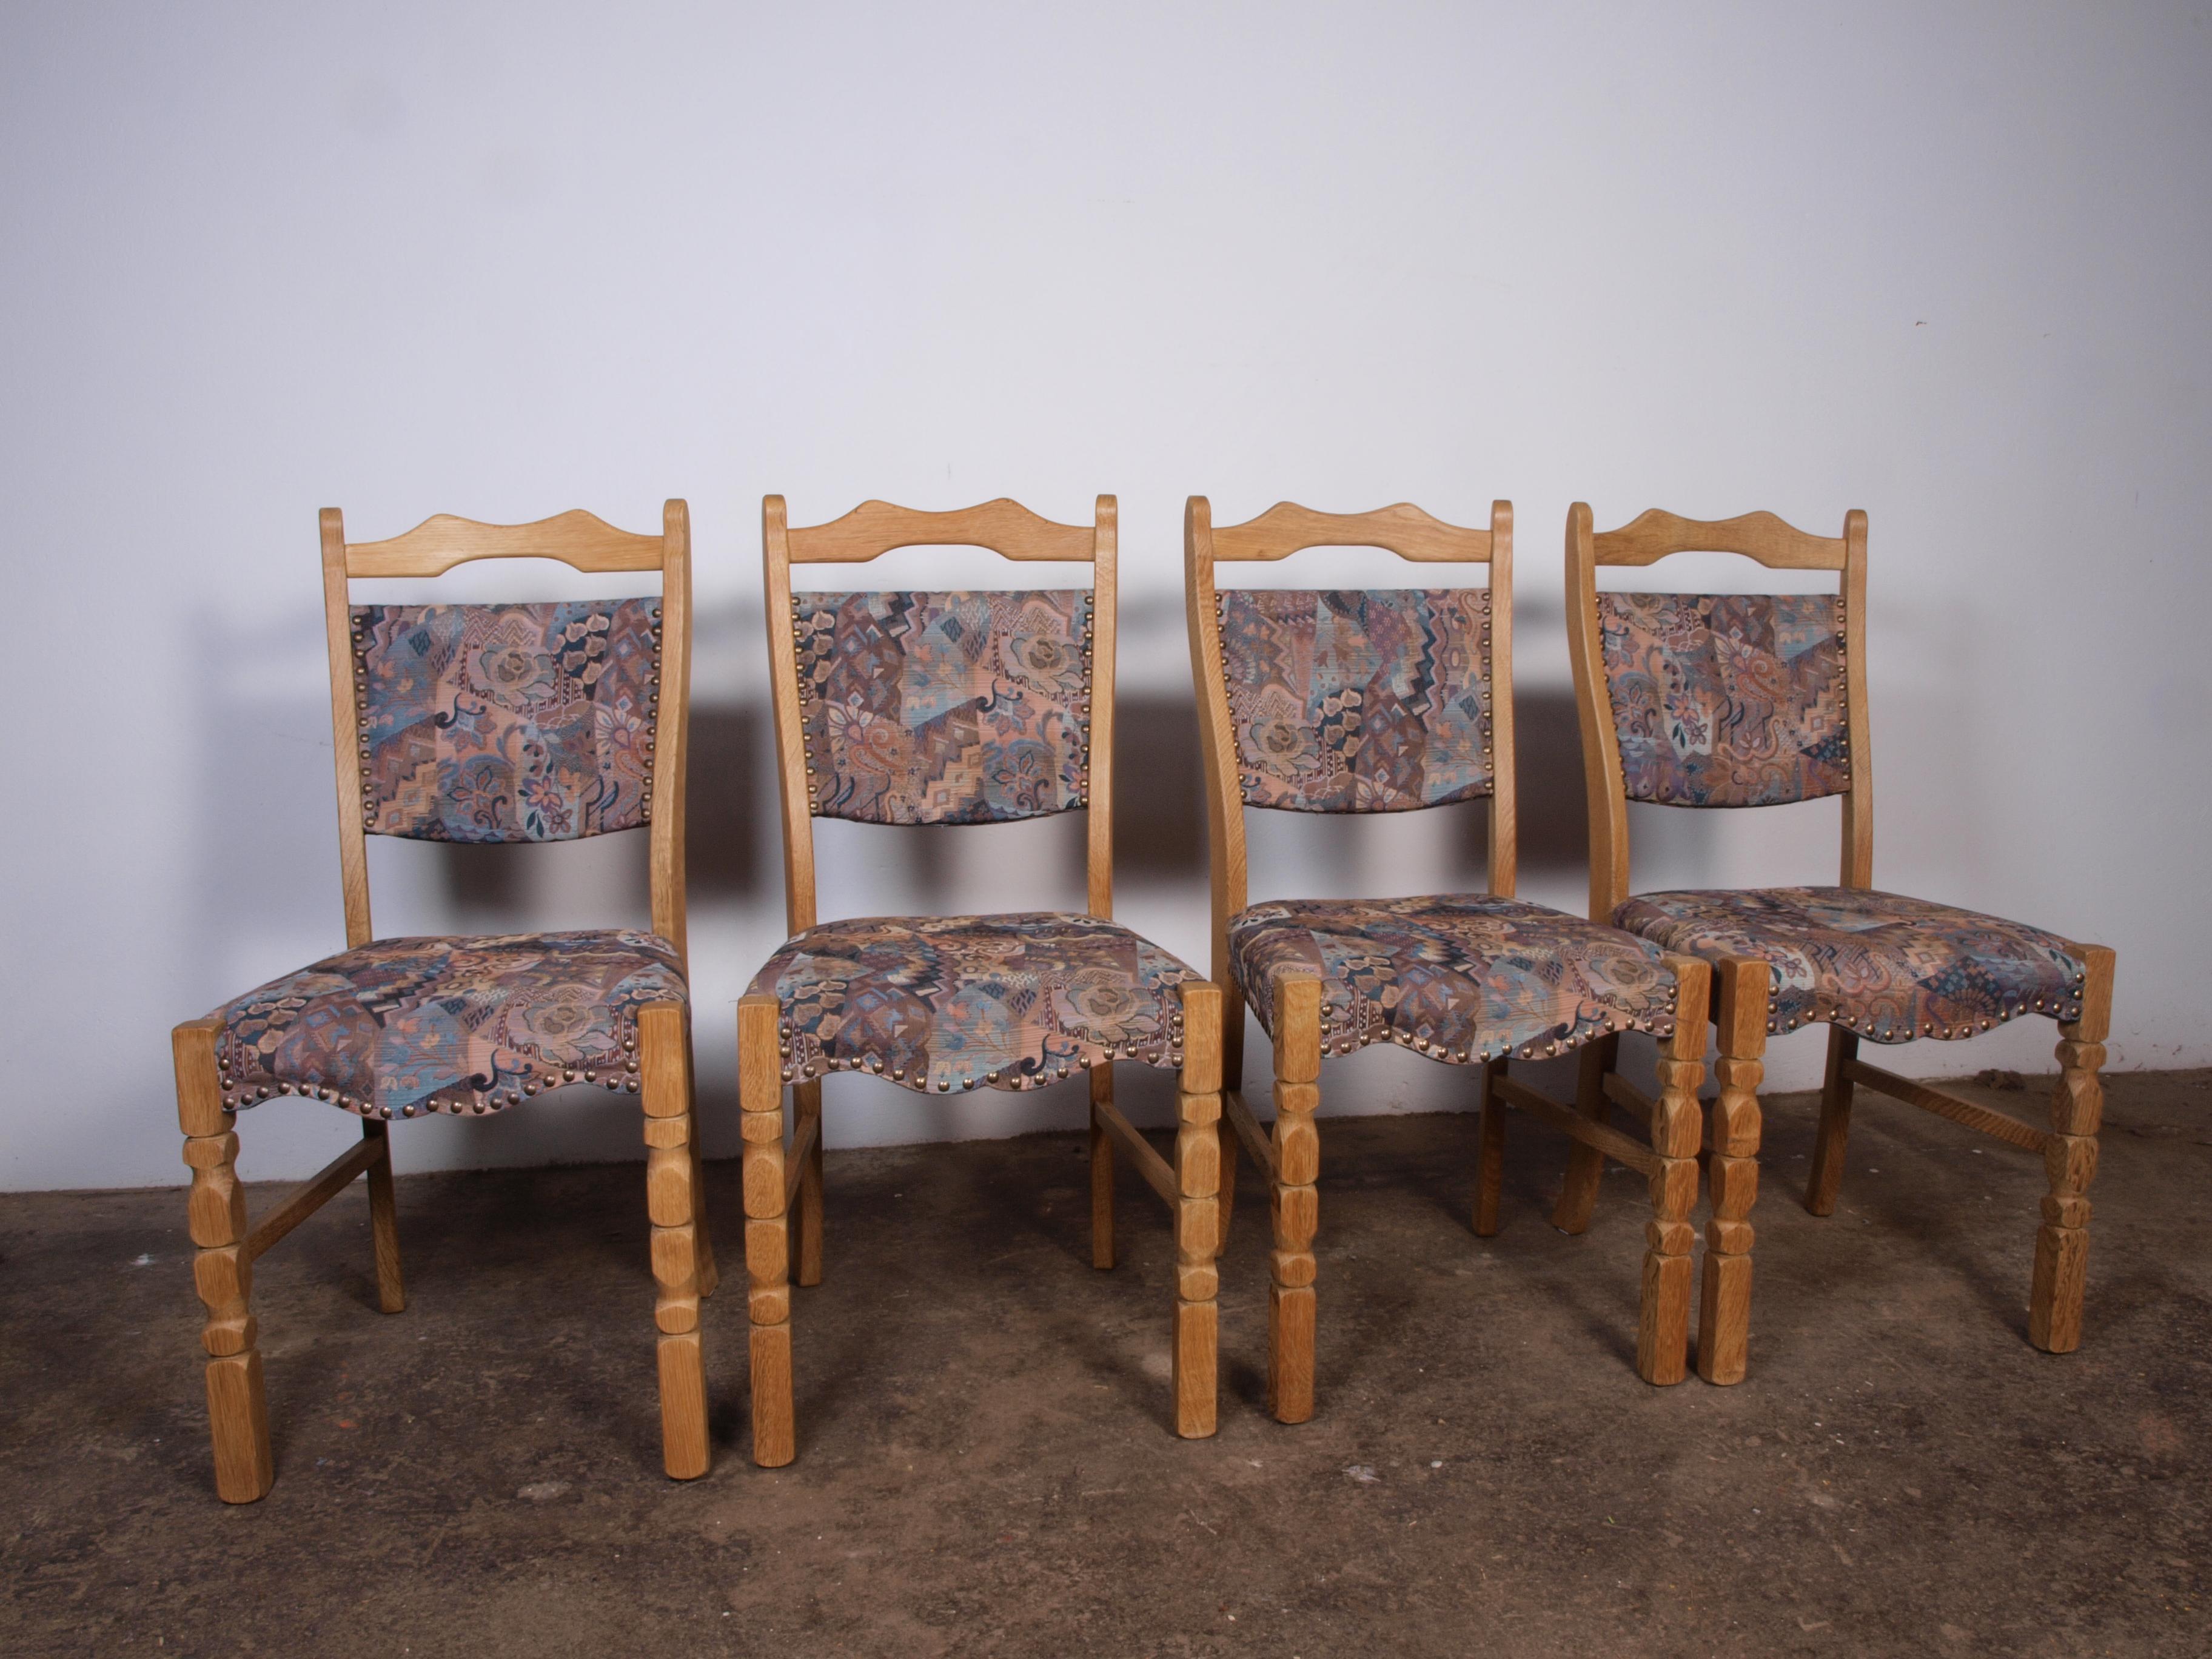 Un ensemble de 4 belles chaises de salle à manger en chêne, bien entretenues, datant du Danemark des années 1960. Elles sont fabriquées en bois de chêne massif dans le style de Henning Kjærnulf. Ils sont tous solides et fermes, et le tissu est en